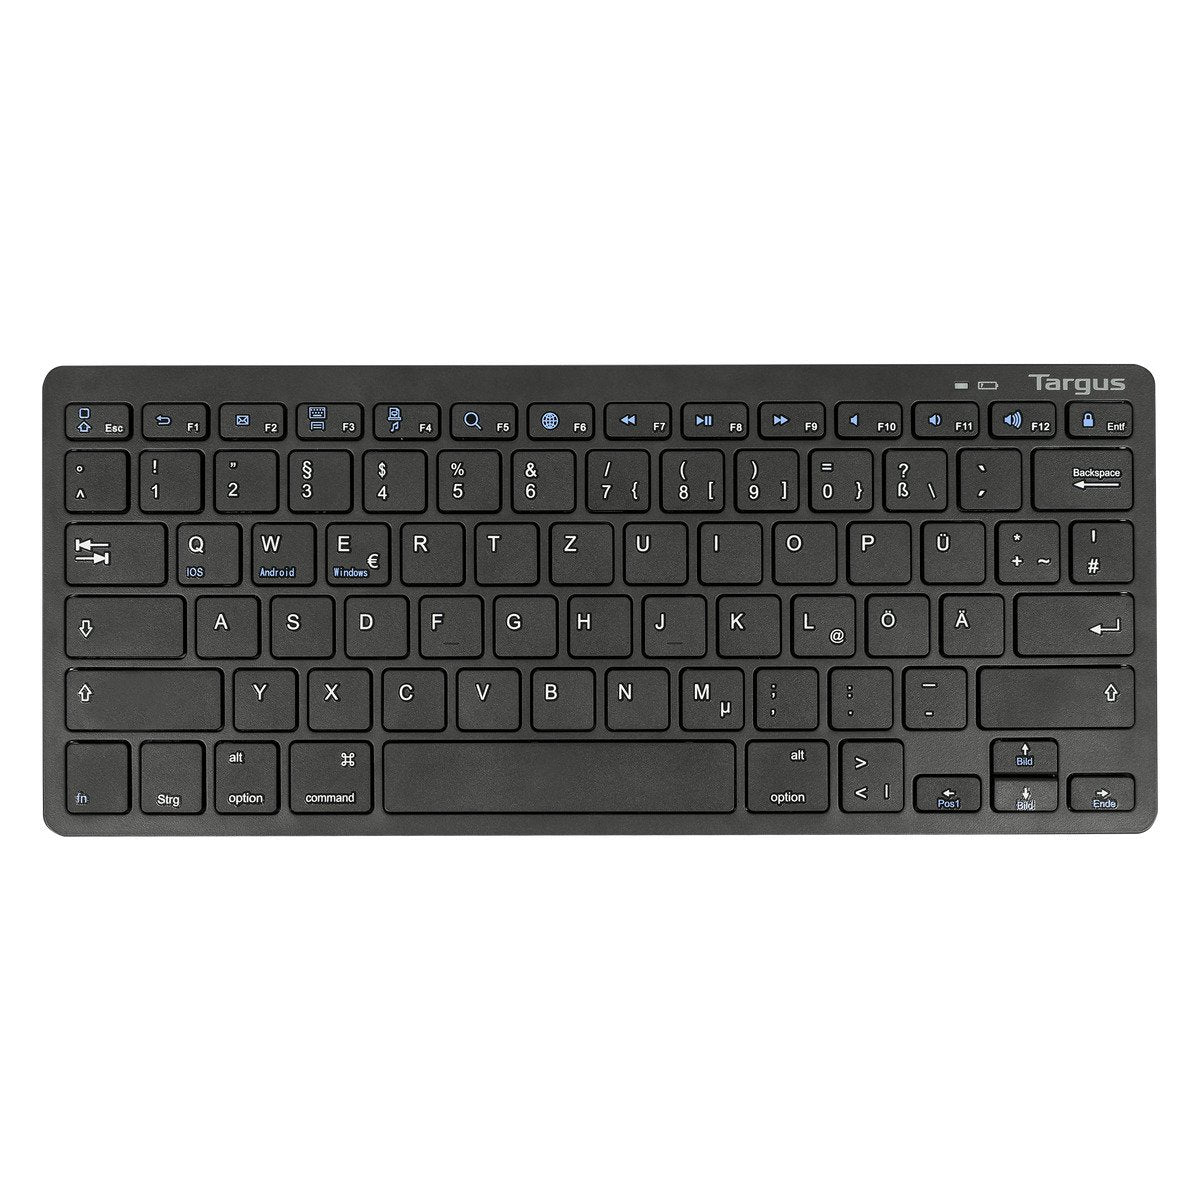 Targus AKB872BE keyboard Bluetooth QWERTZ German Black